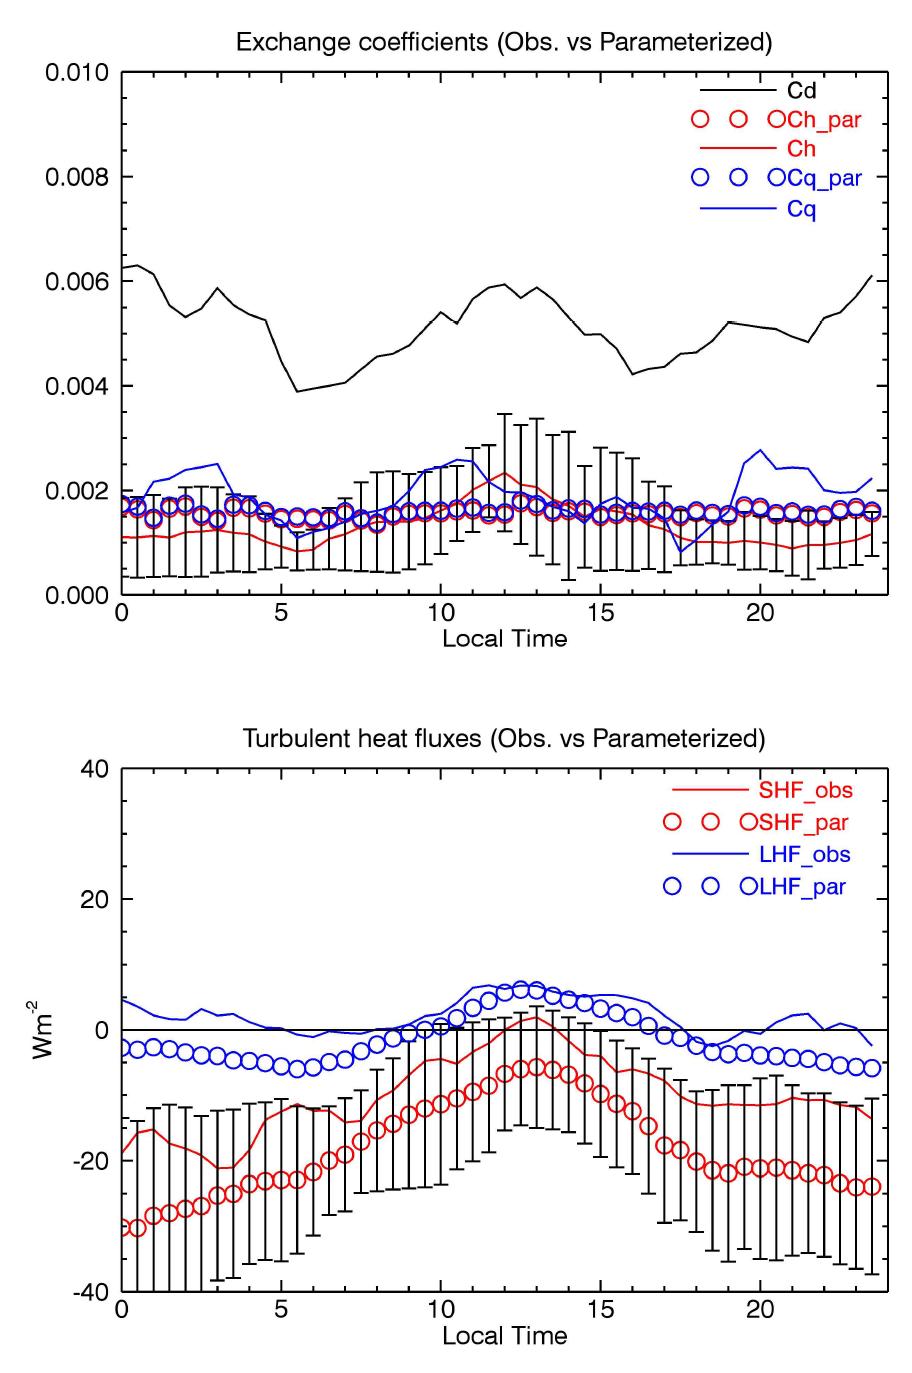 세종기지 관측자료에 기반한 해빙상 열속 교환계수 일변화 양상